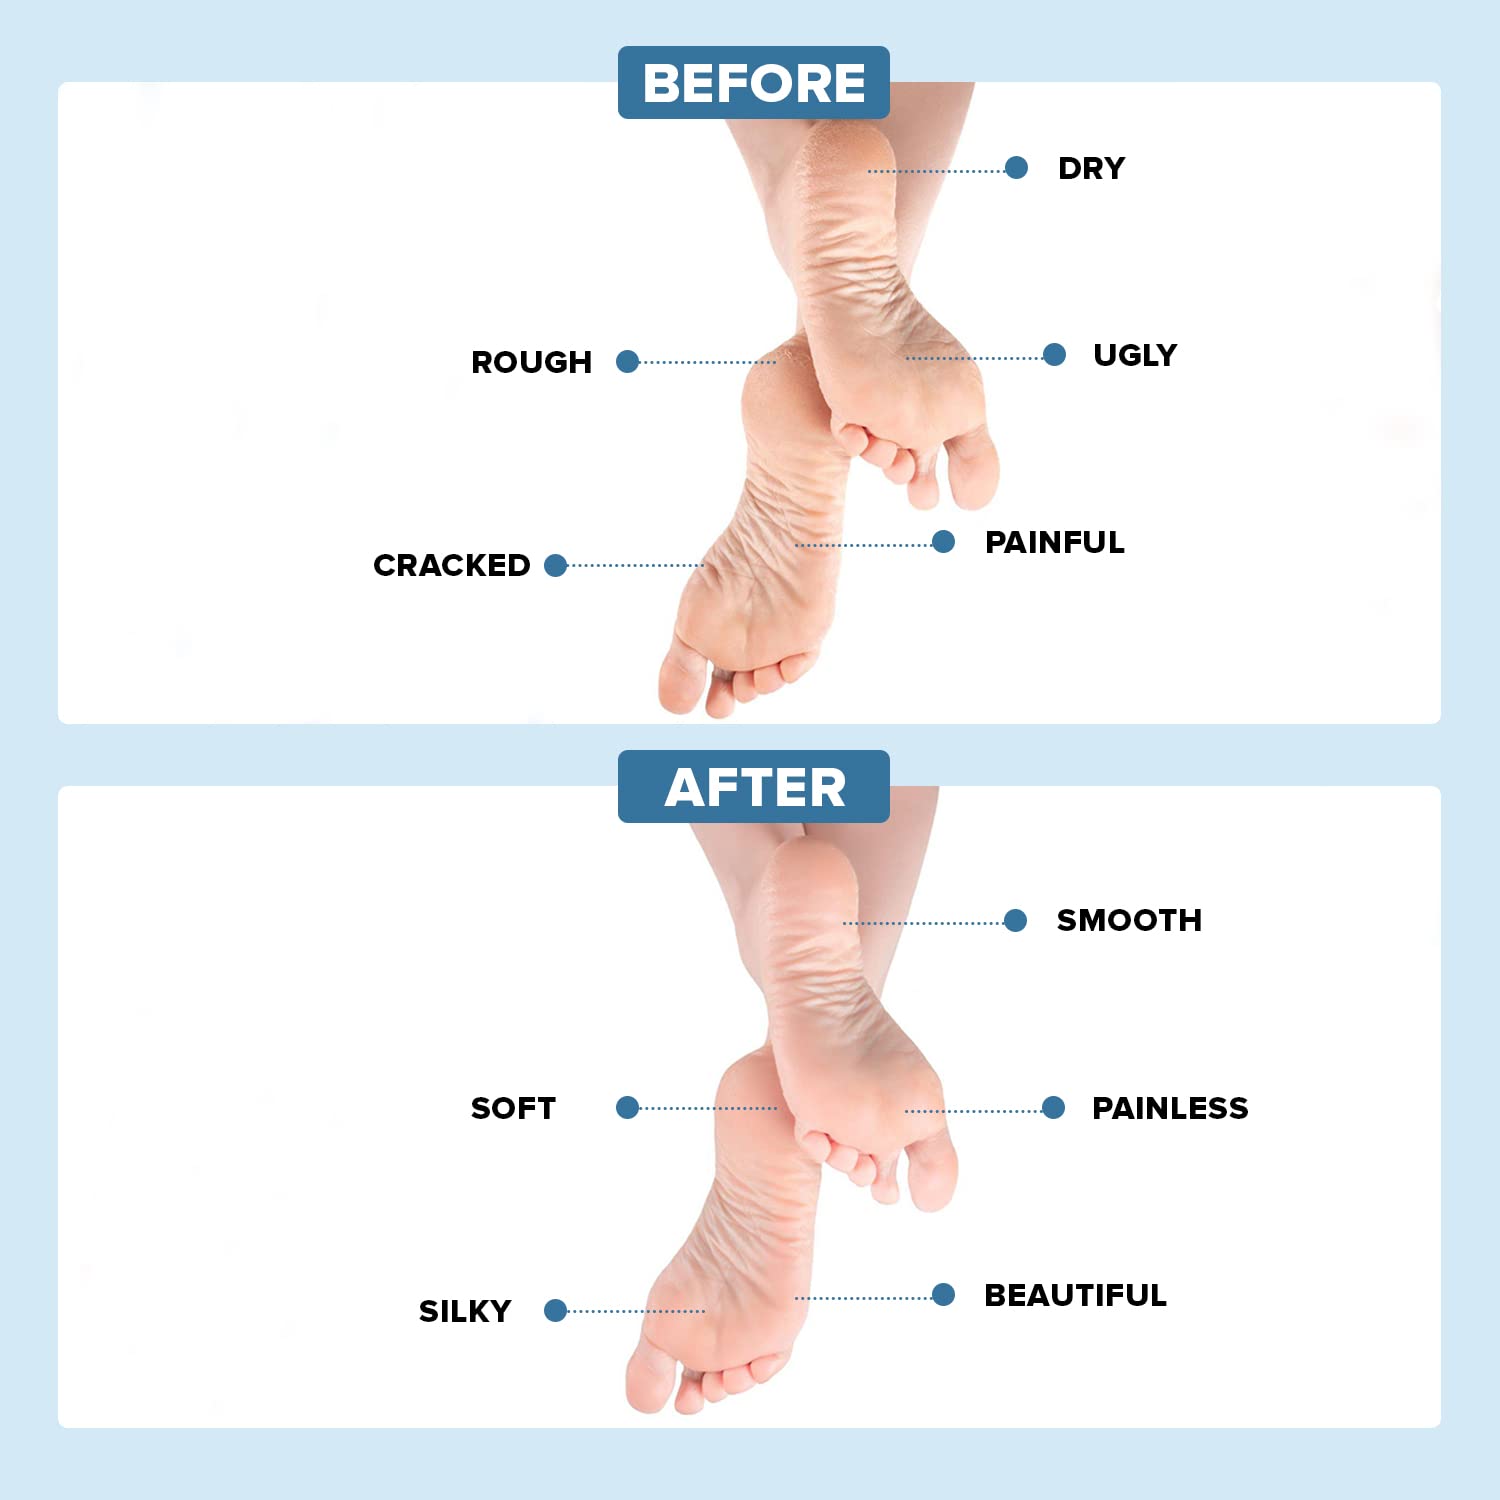 5 tips to heal cracked heels | HealthShots